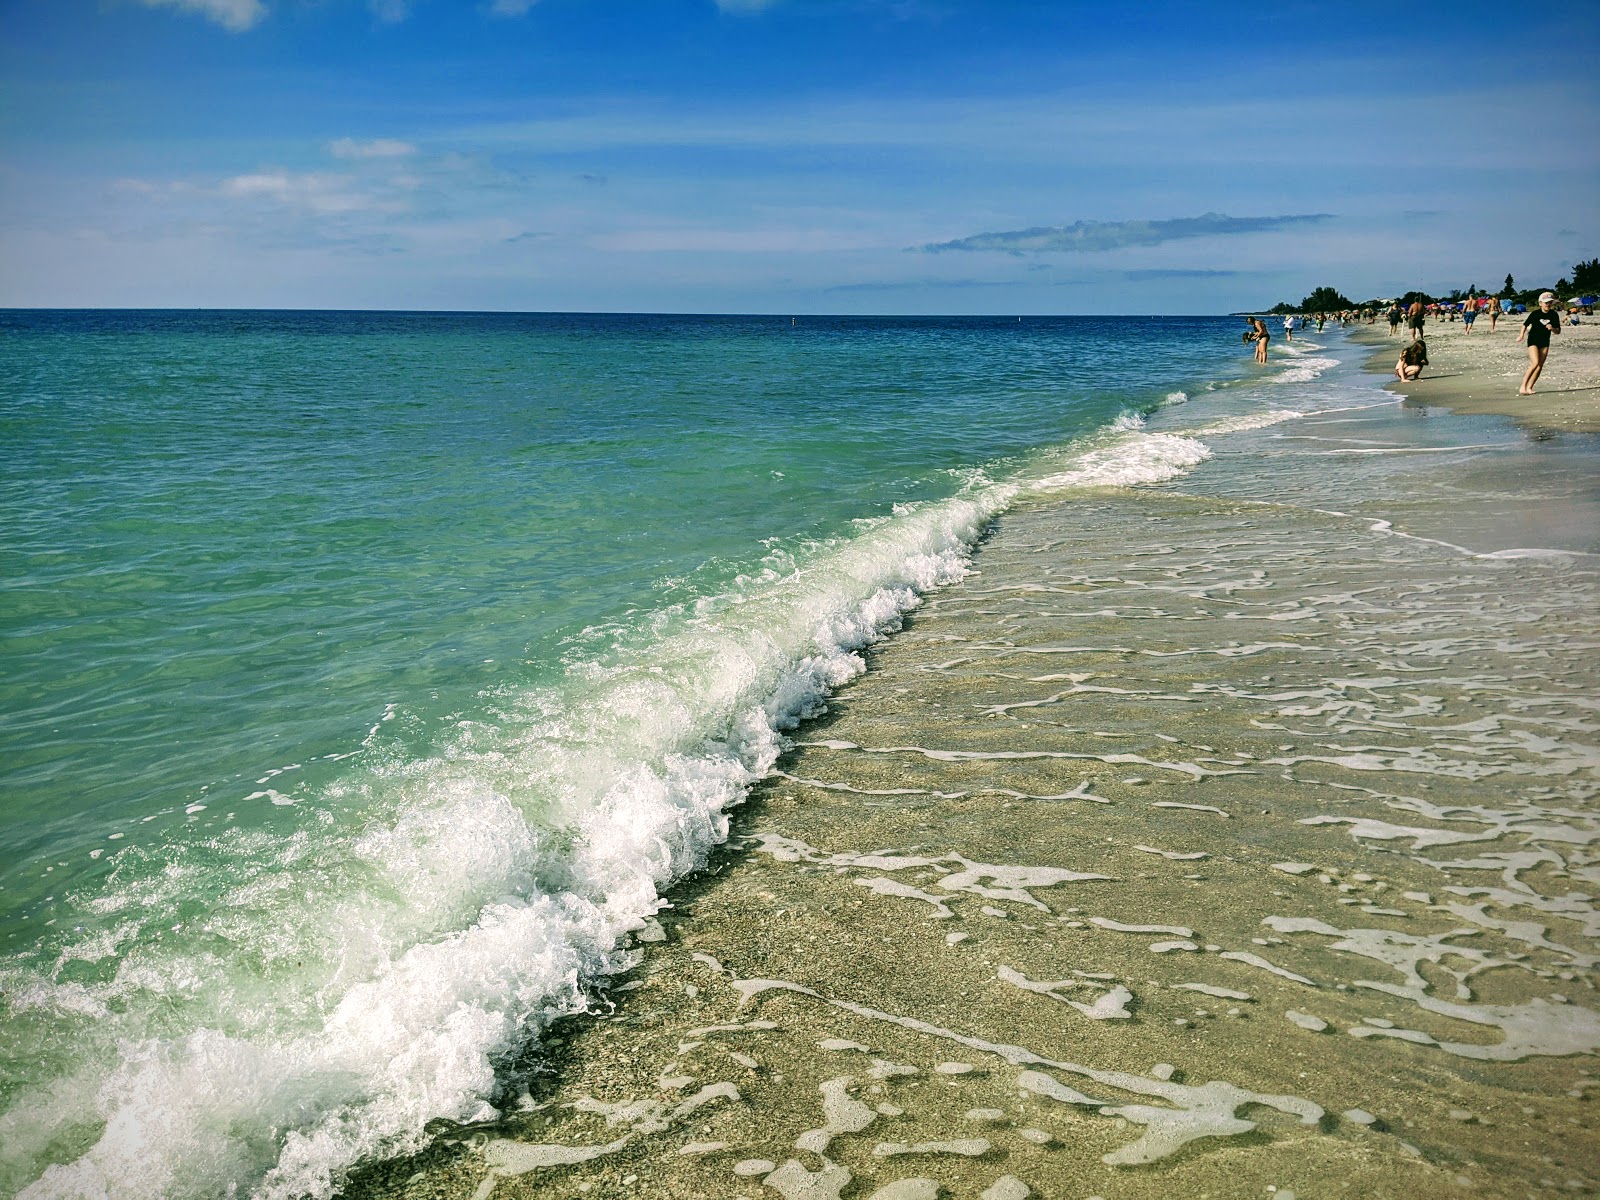 Foto af Manasota Key beach - populært sted blandt afslapningskendere